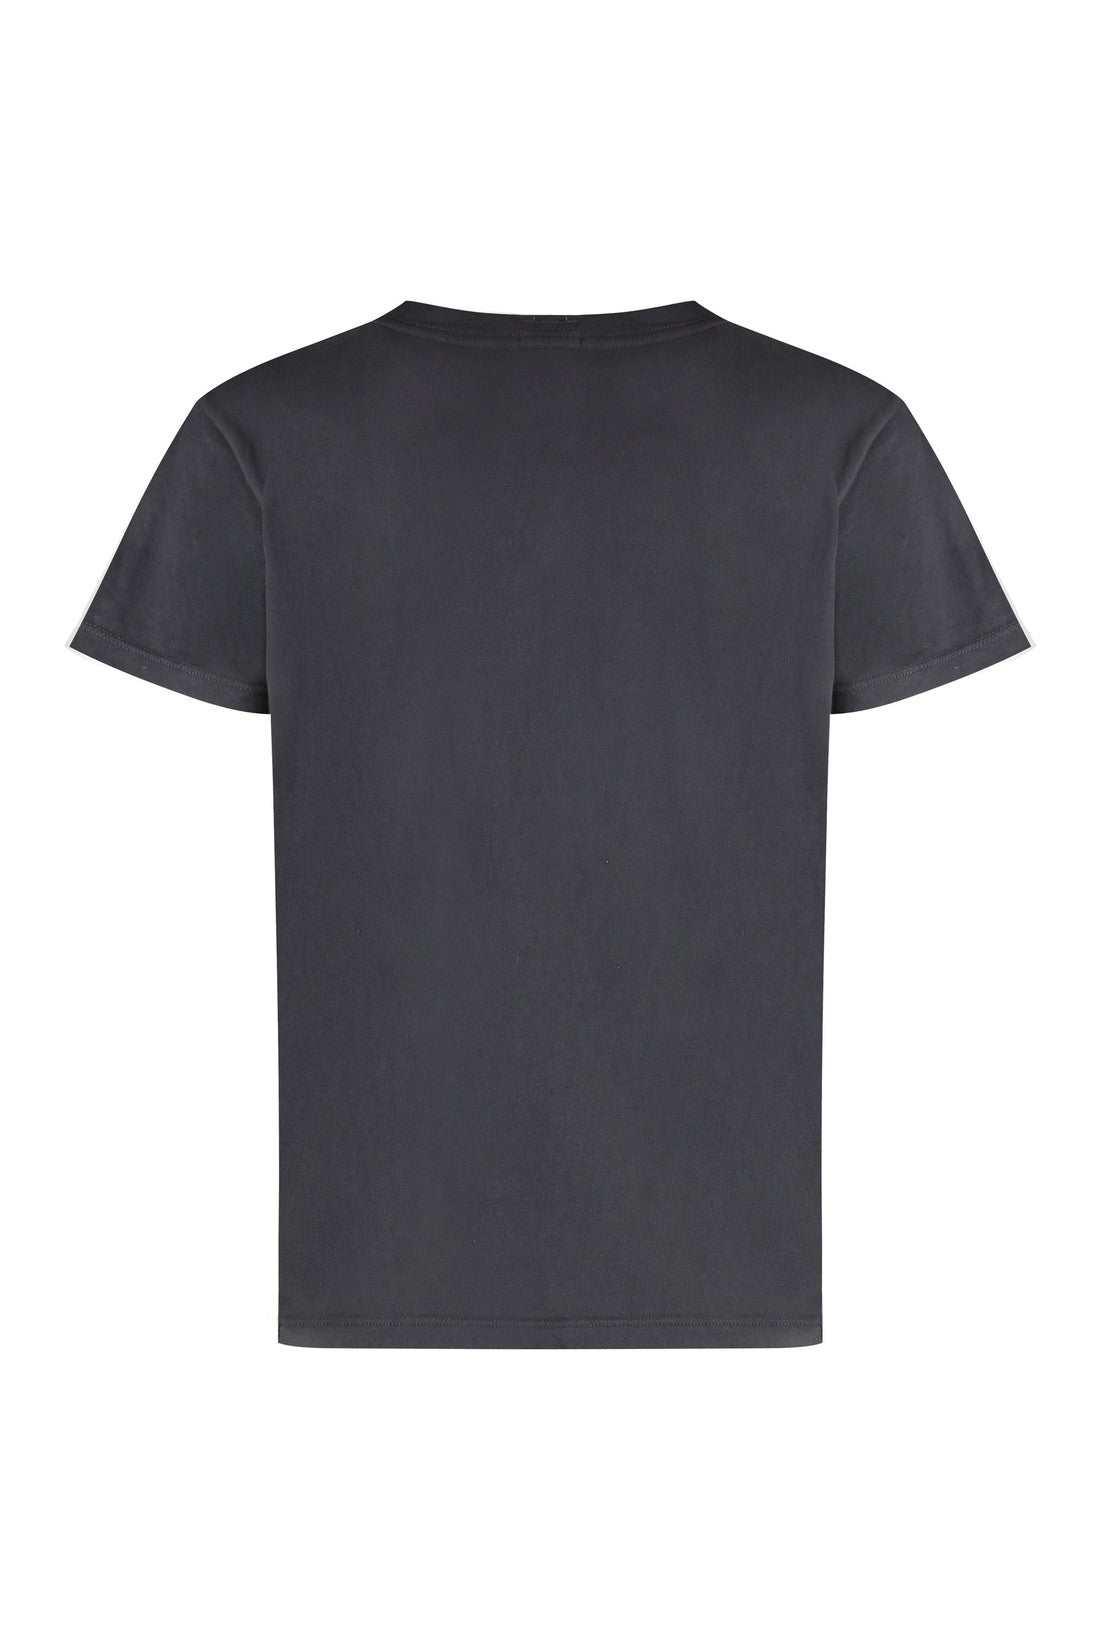 Mother-OUTLET-SALE-Cotton crew-neck T-shirt-ARCHIVIST